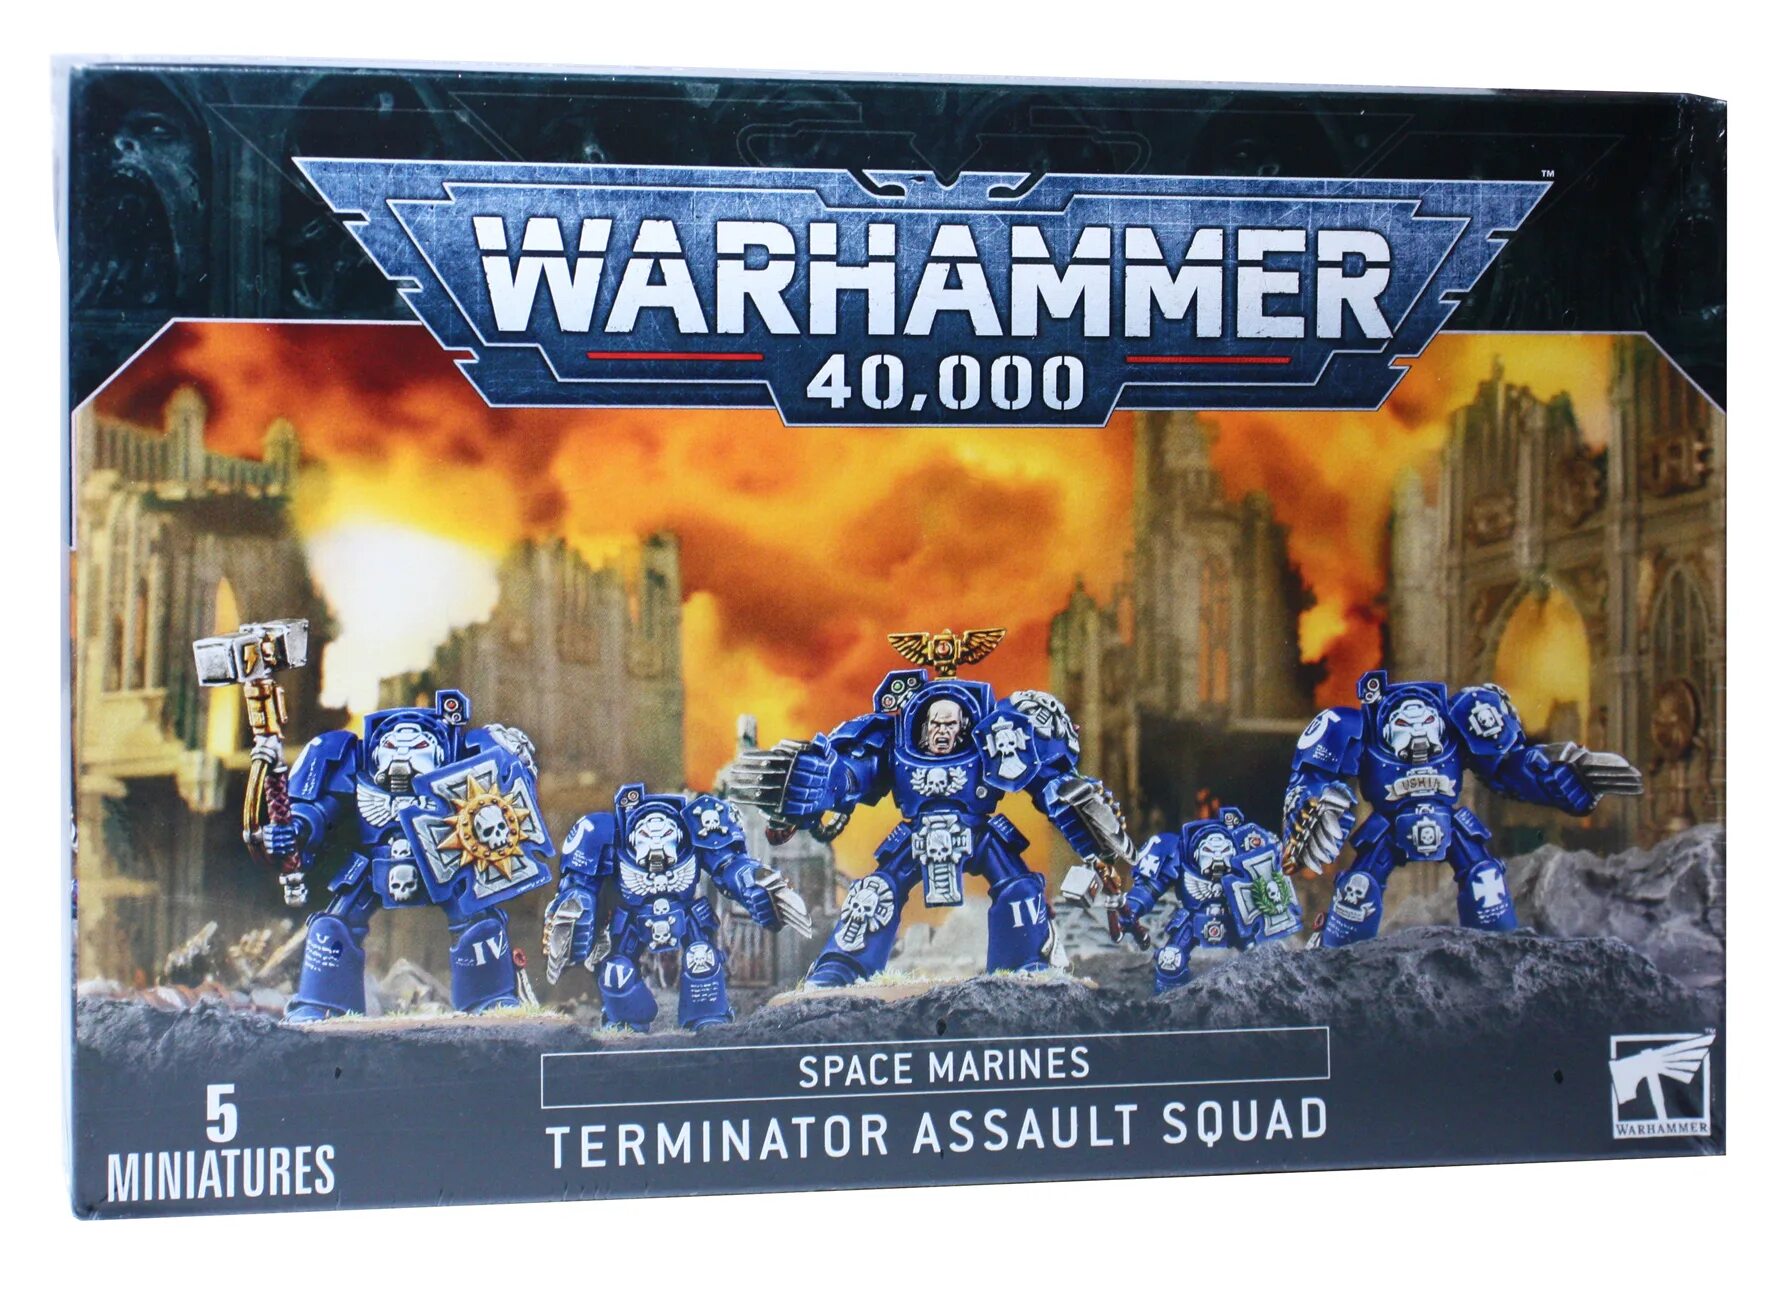 Space Marine Terminator Assault Squad. Space Marine Terminator Squad. Space Marine Assault Squad. Space Marin Terminator SQUAAD.